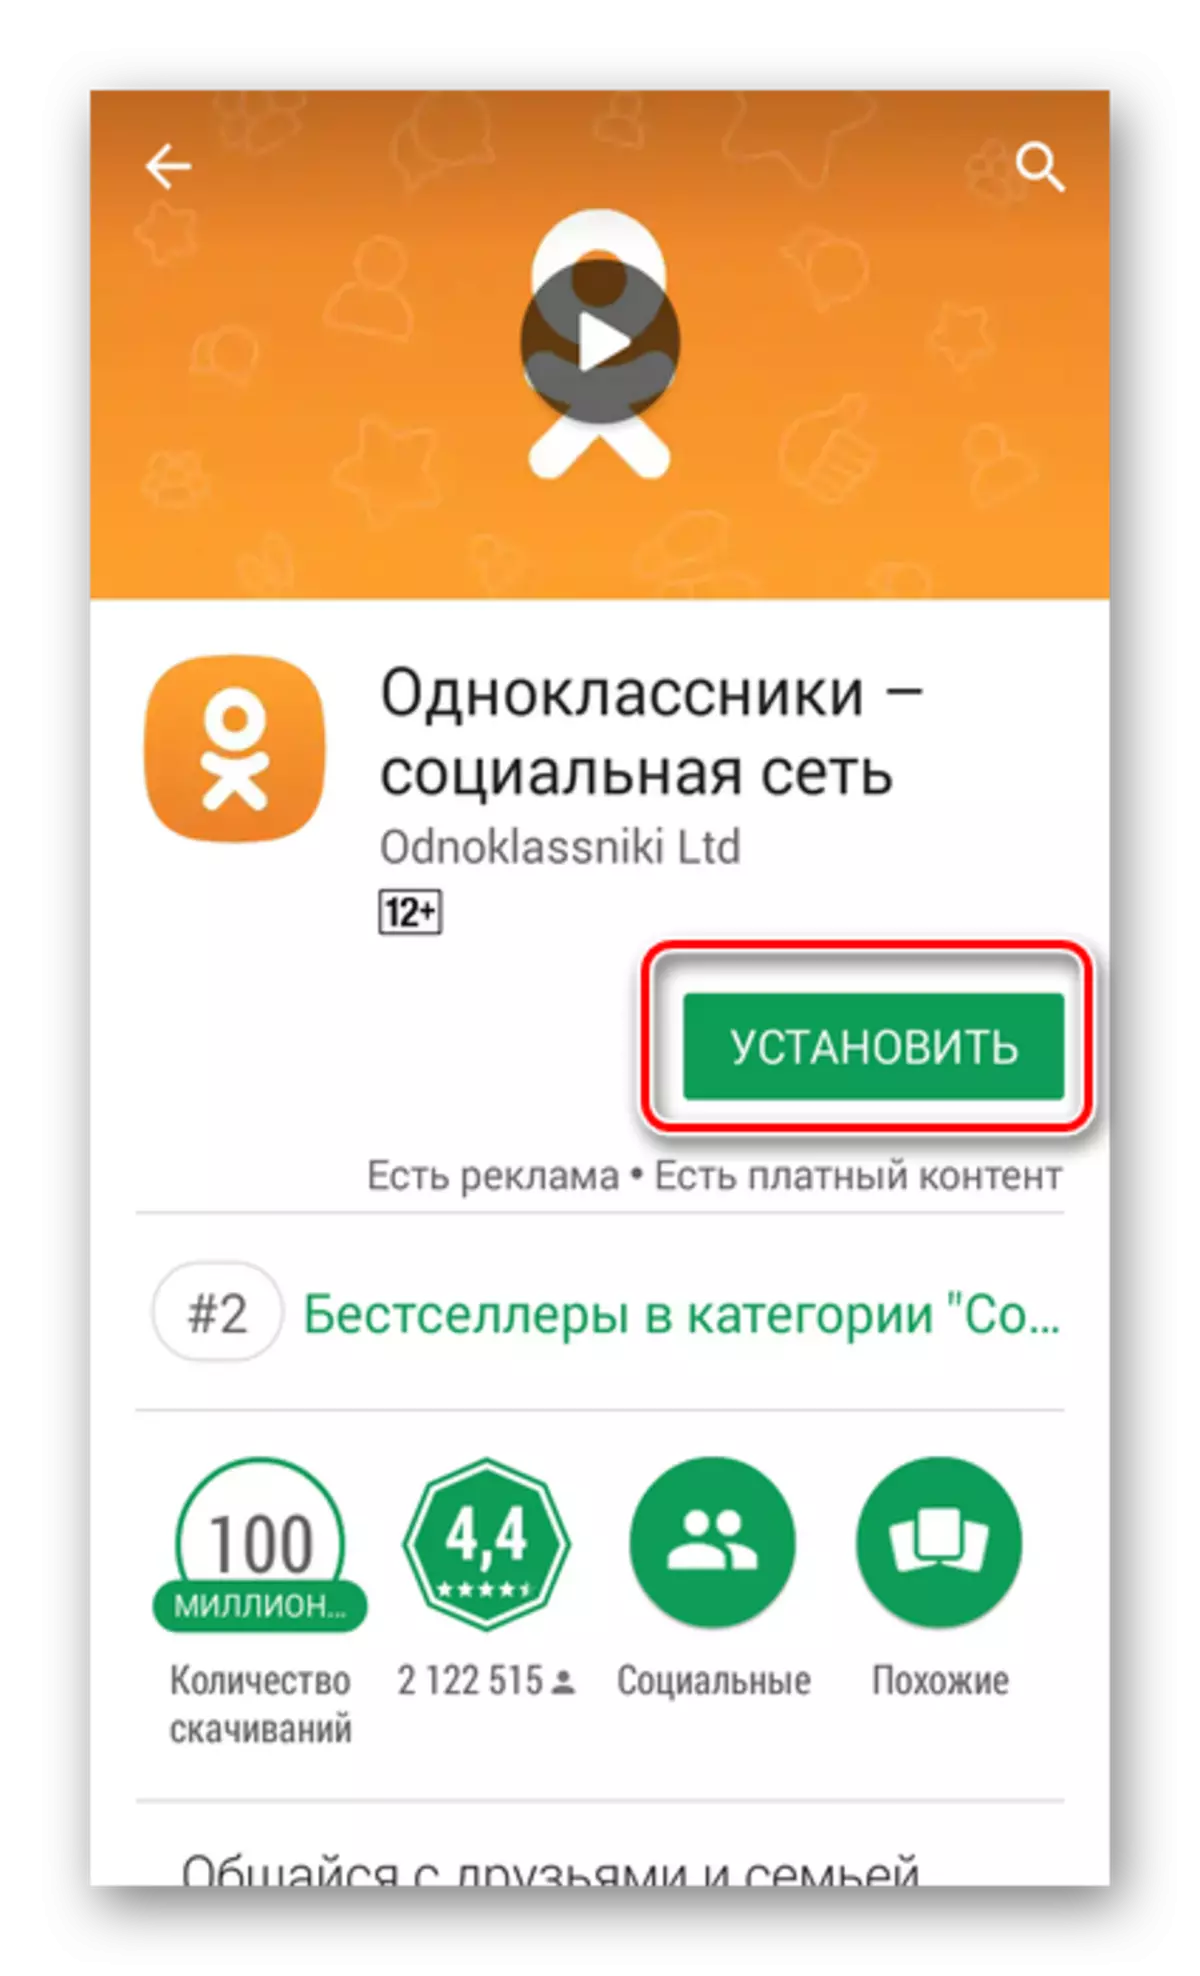 Odnoklassniki ಅಪ್ಲಿಕೇಶನ್ ಅನ್ನು ಸ್ಥಾಪಿಸಿ